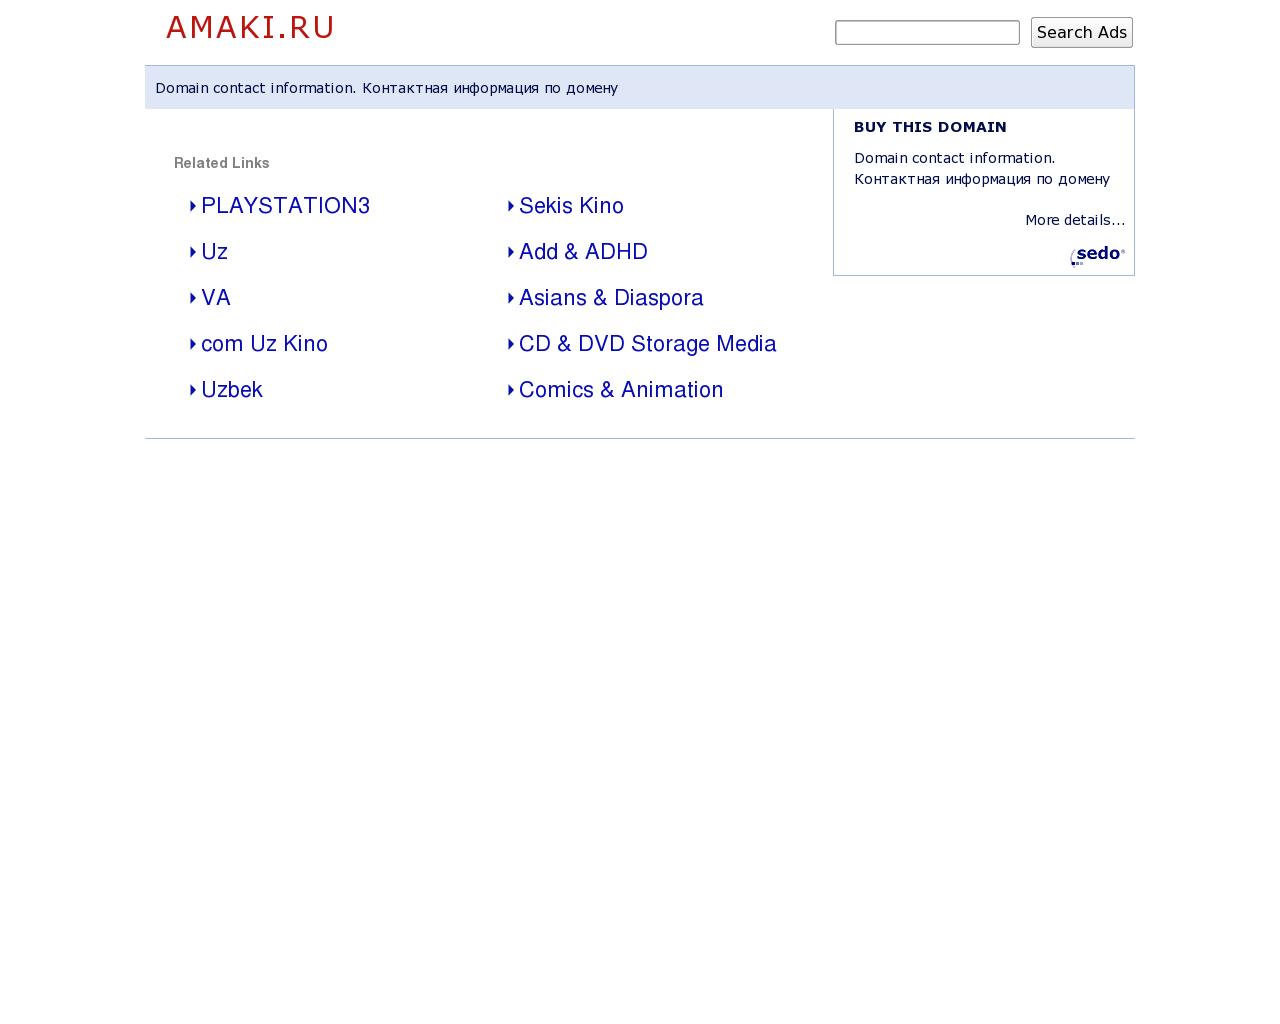 Изображение сайта amaki.ru в разрешении 1280x1024